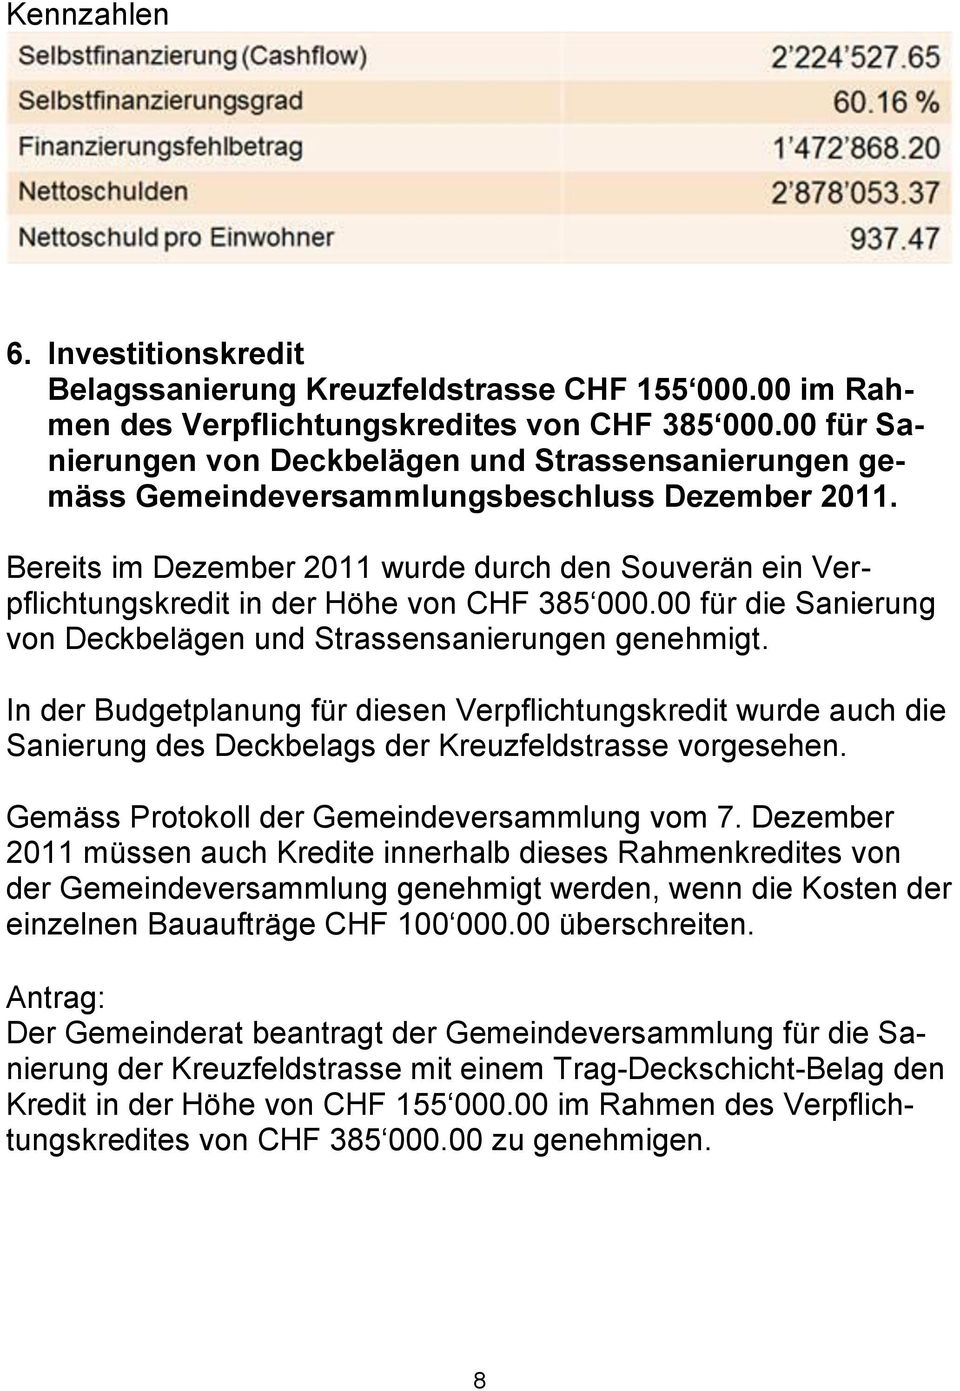 Bereits im Dezember 2011 wurde durch den Souverän ein Verpflichtungskredit in der Höhe von CHF 385 000.00 für die Sanierung von Deckbelägen und Strassensanierungen genehmigt.